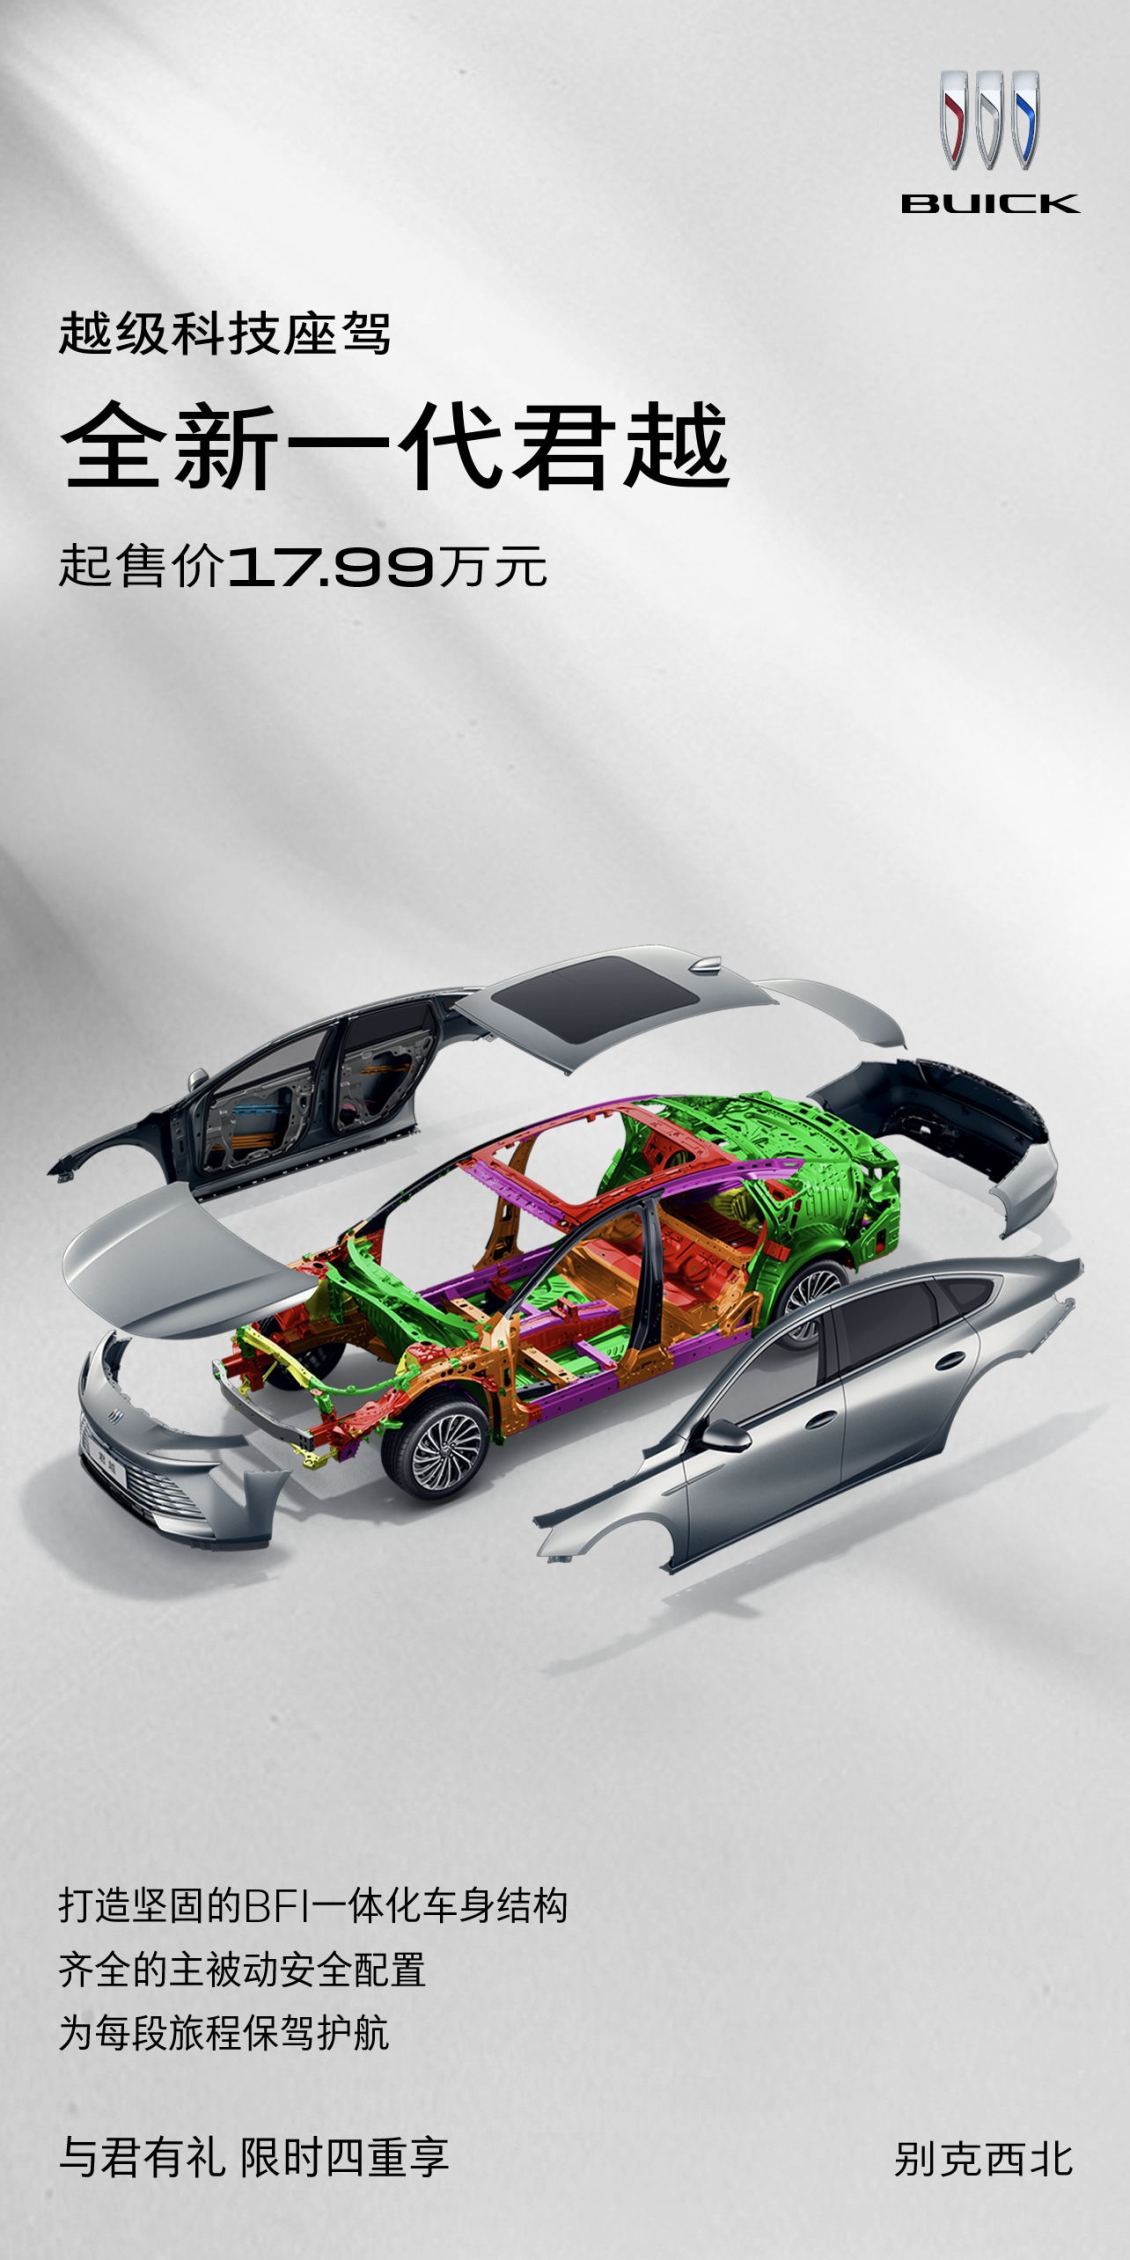 淘宝美工y256623汽车品牌宣传海报作品